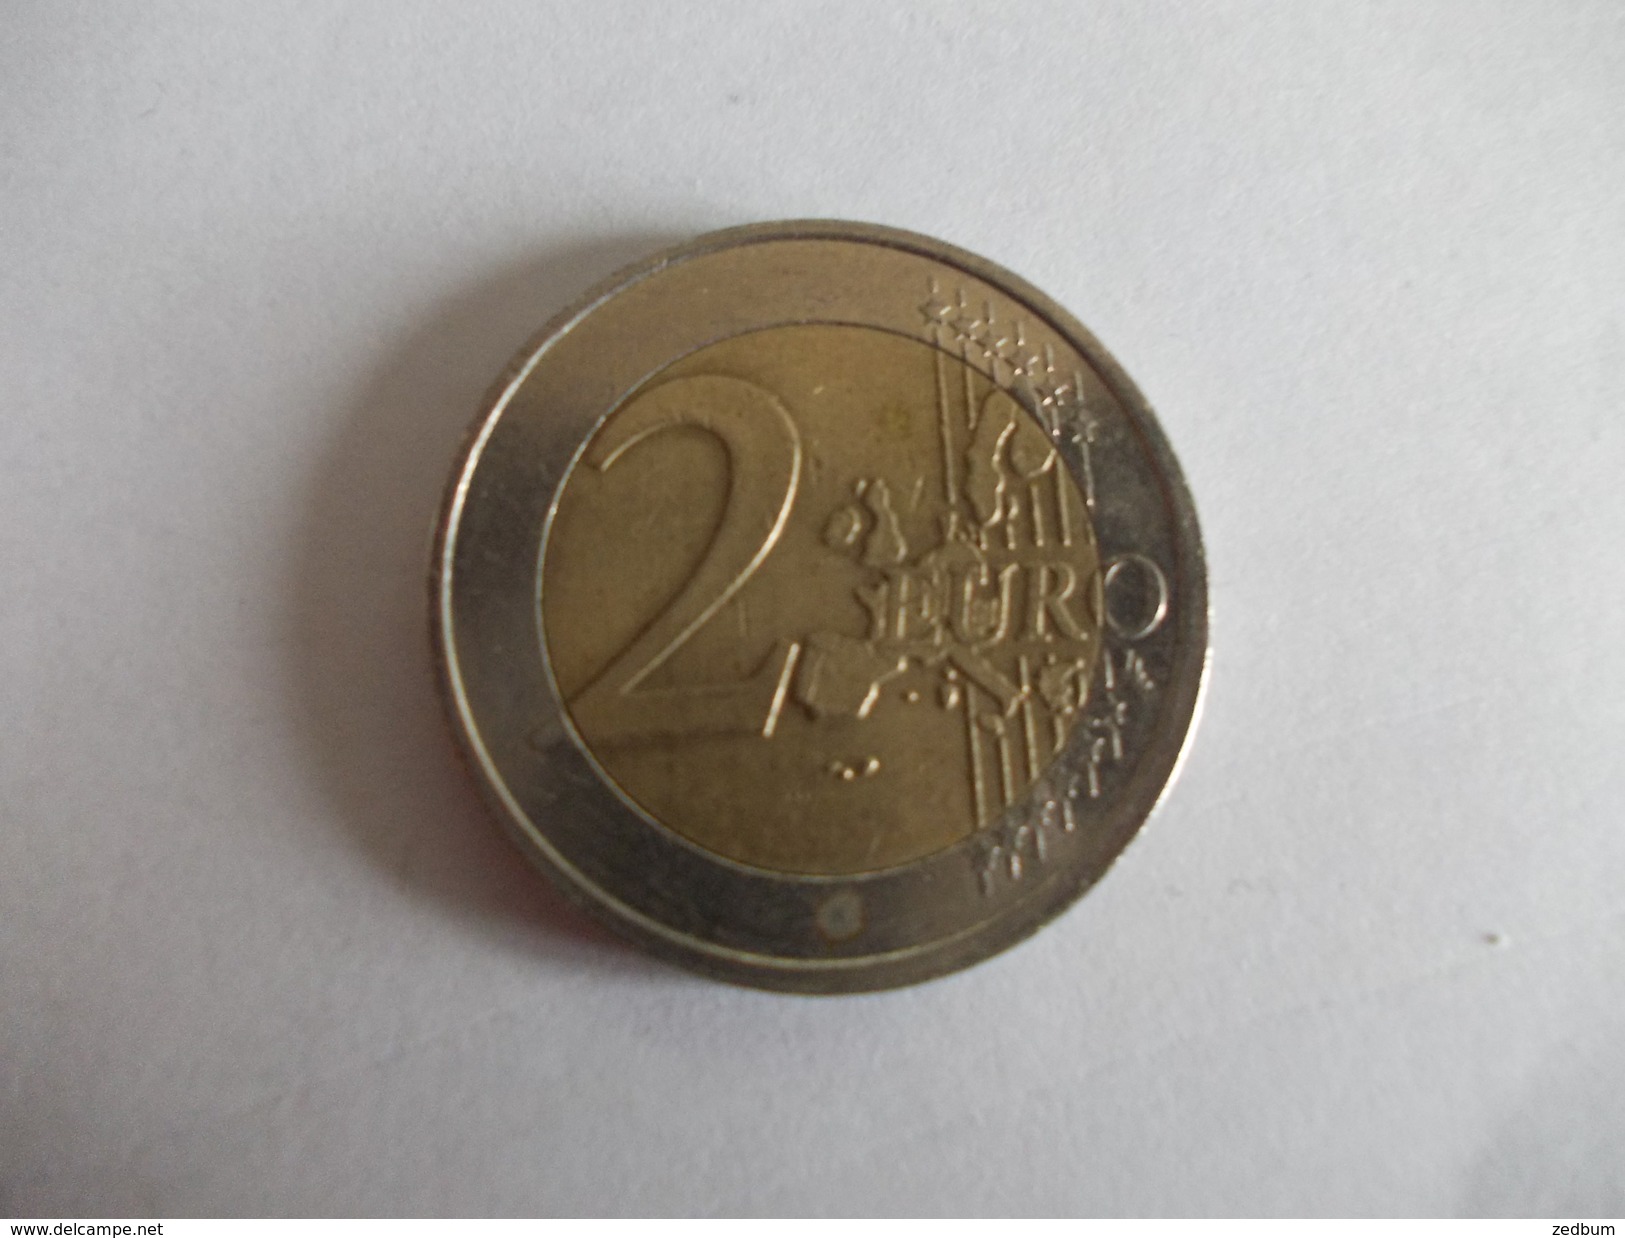 Monnaie Pièce De 2 Euros De Pays Bas Année 2002 Valeur Argus 3 &euro; - Netherlands